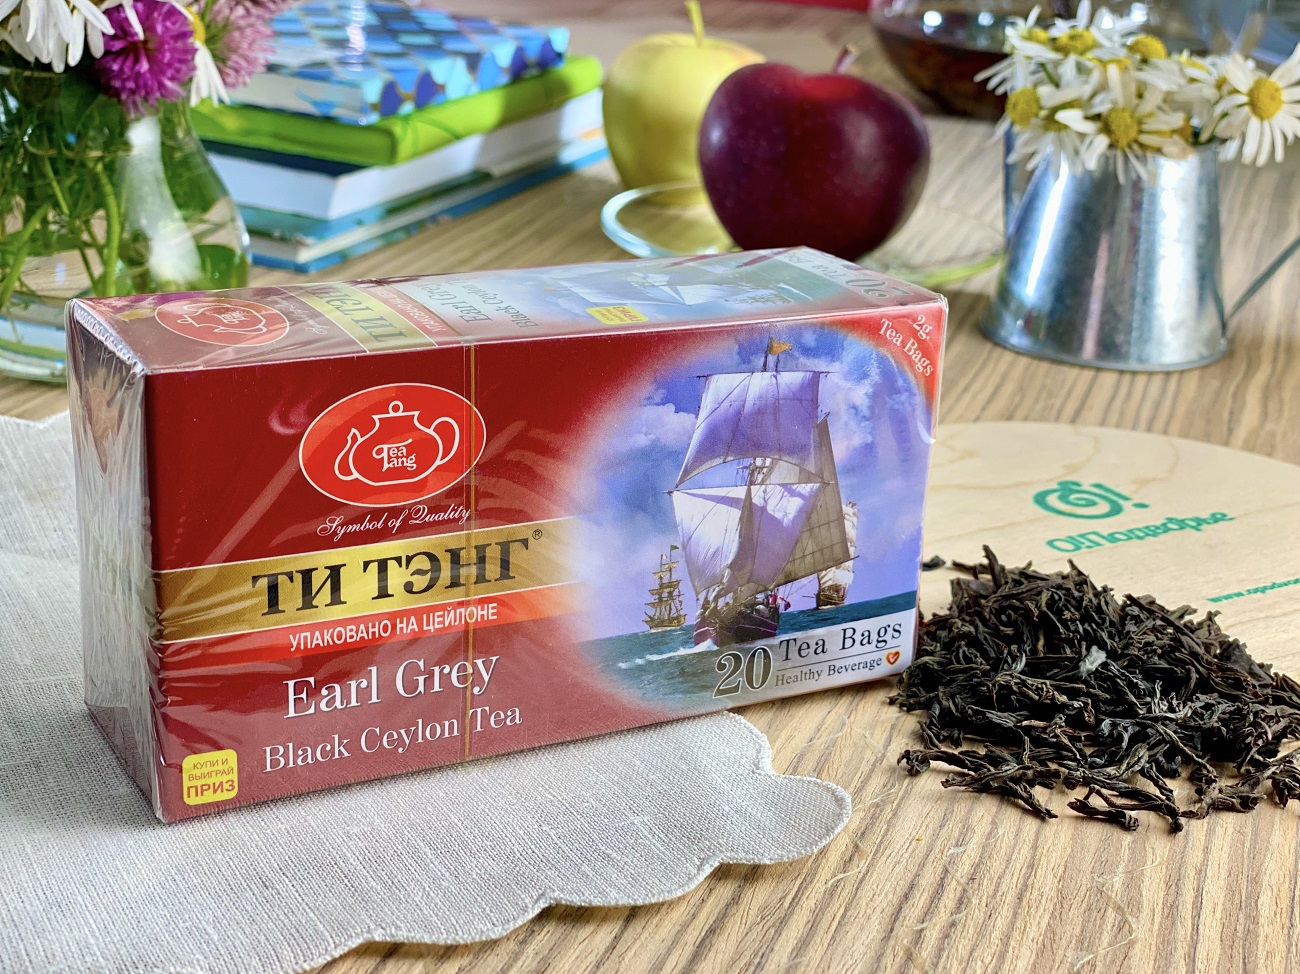 Черный чай ТИ ТЭНГ Earl Grey пакетированный 20 пакетов